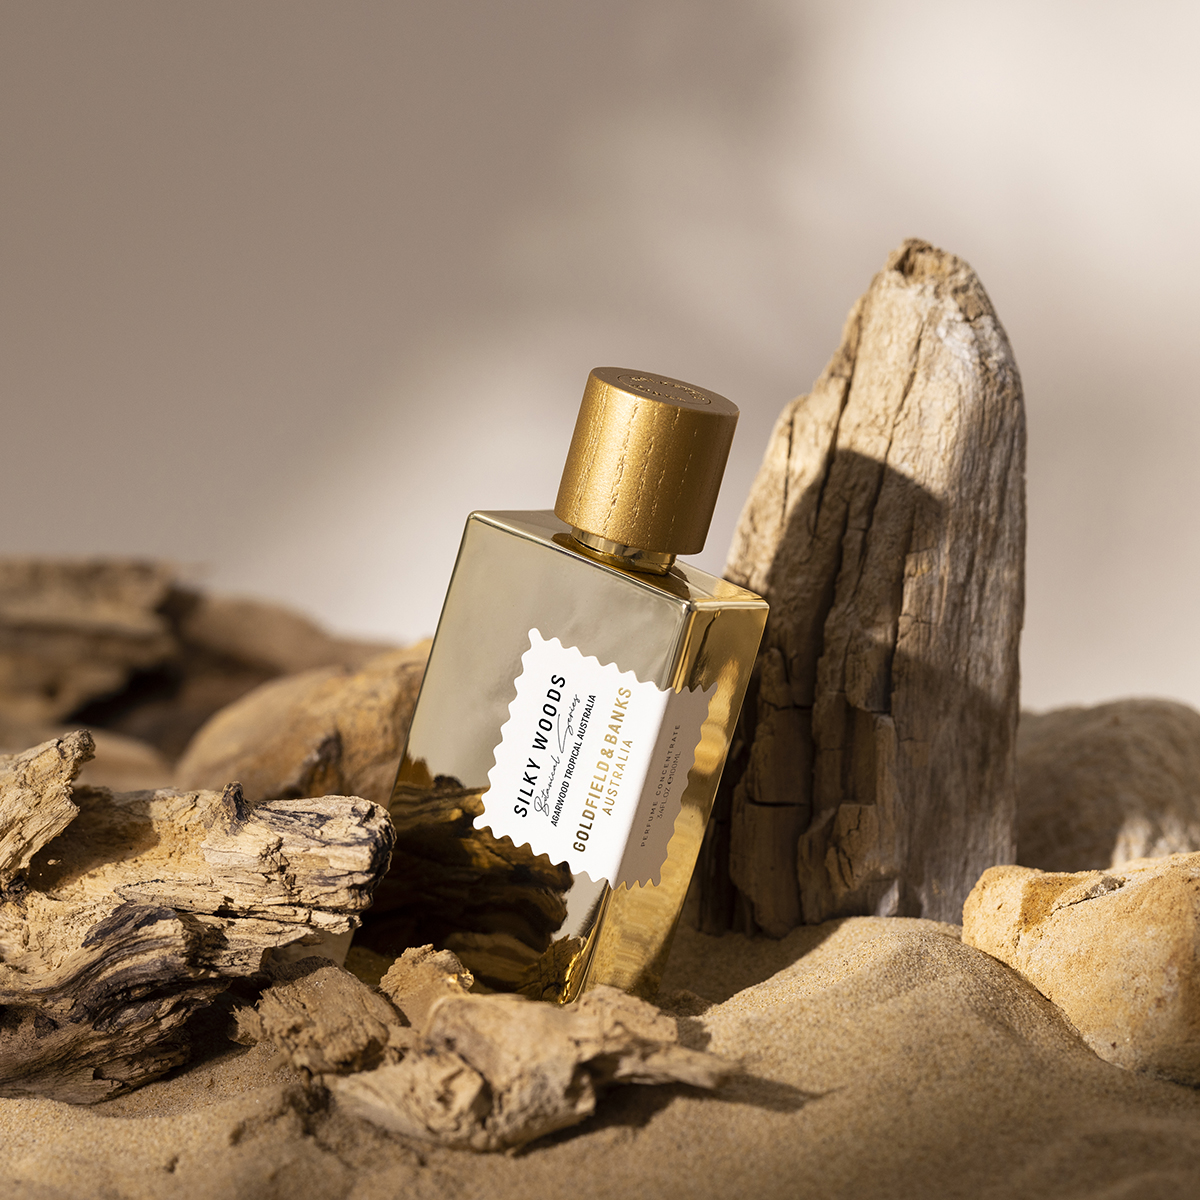 Goldfield & Banks - Silky Woods Eau de Parfum